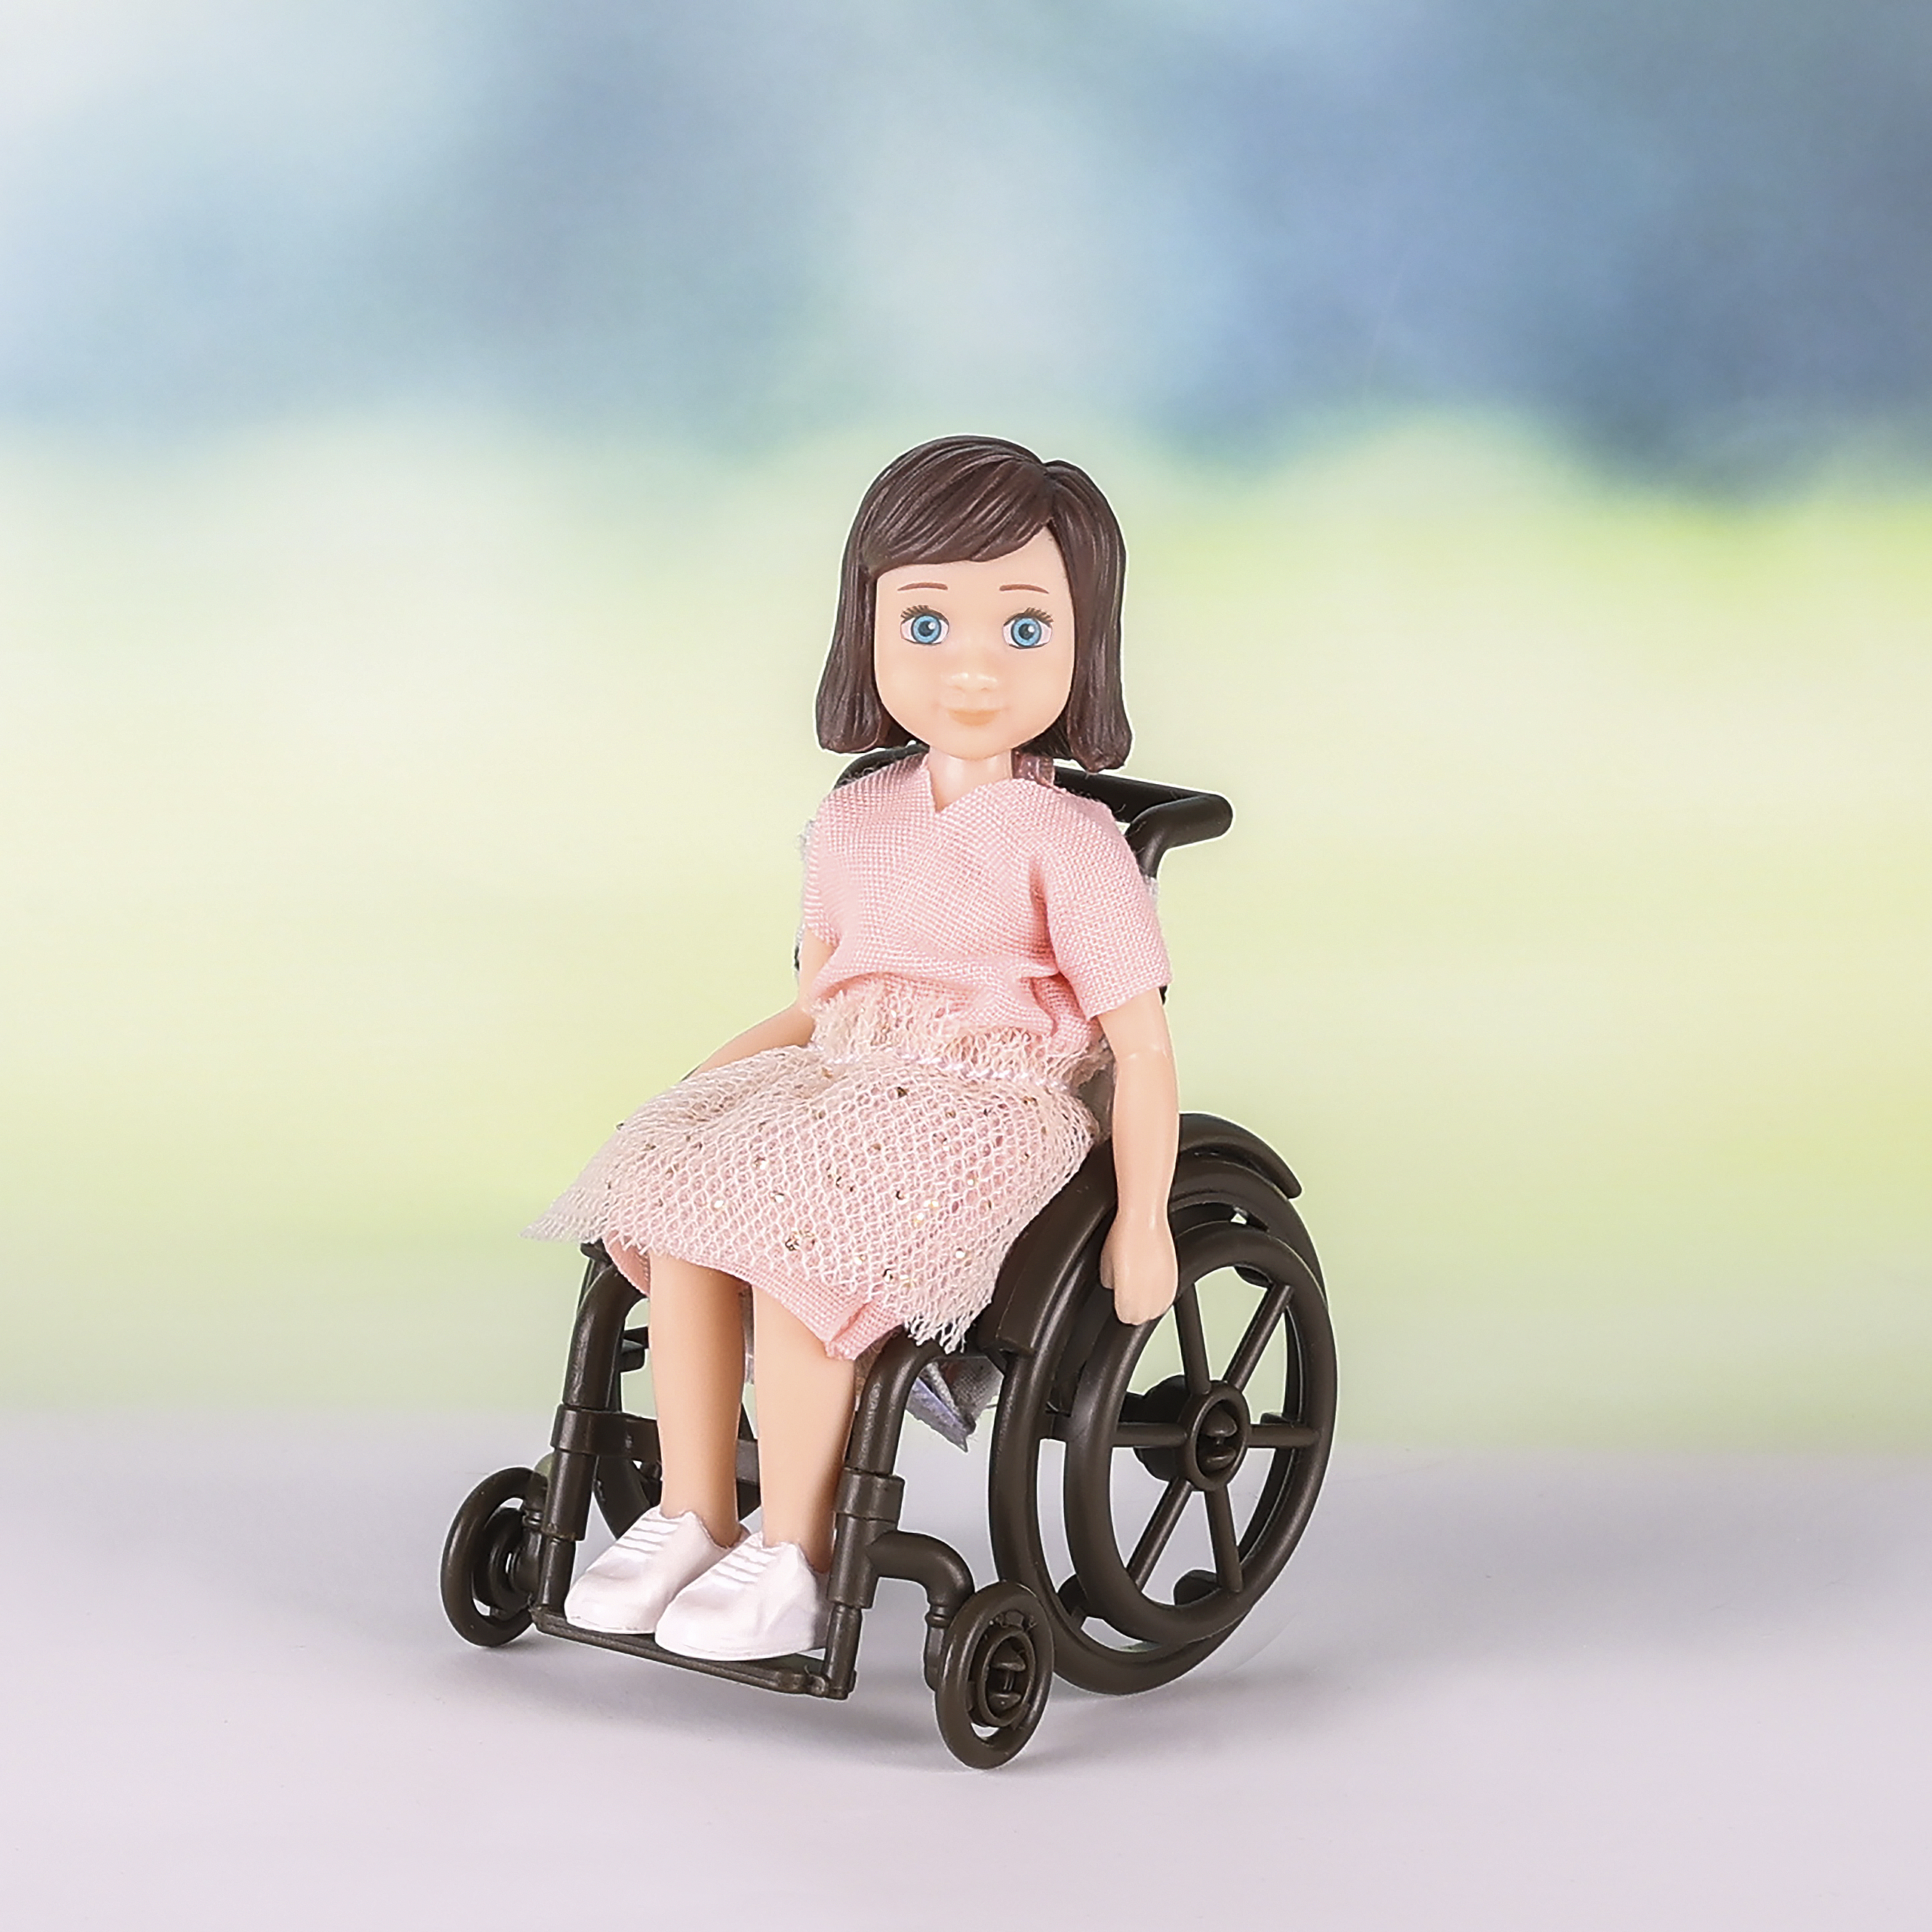 Lundby lundby	dollshouse doll with wheelchair